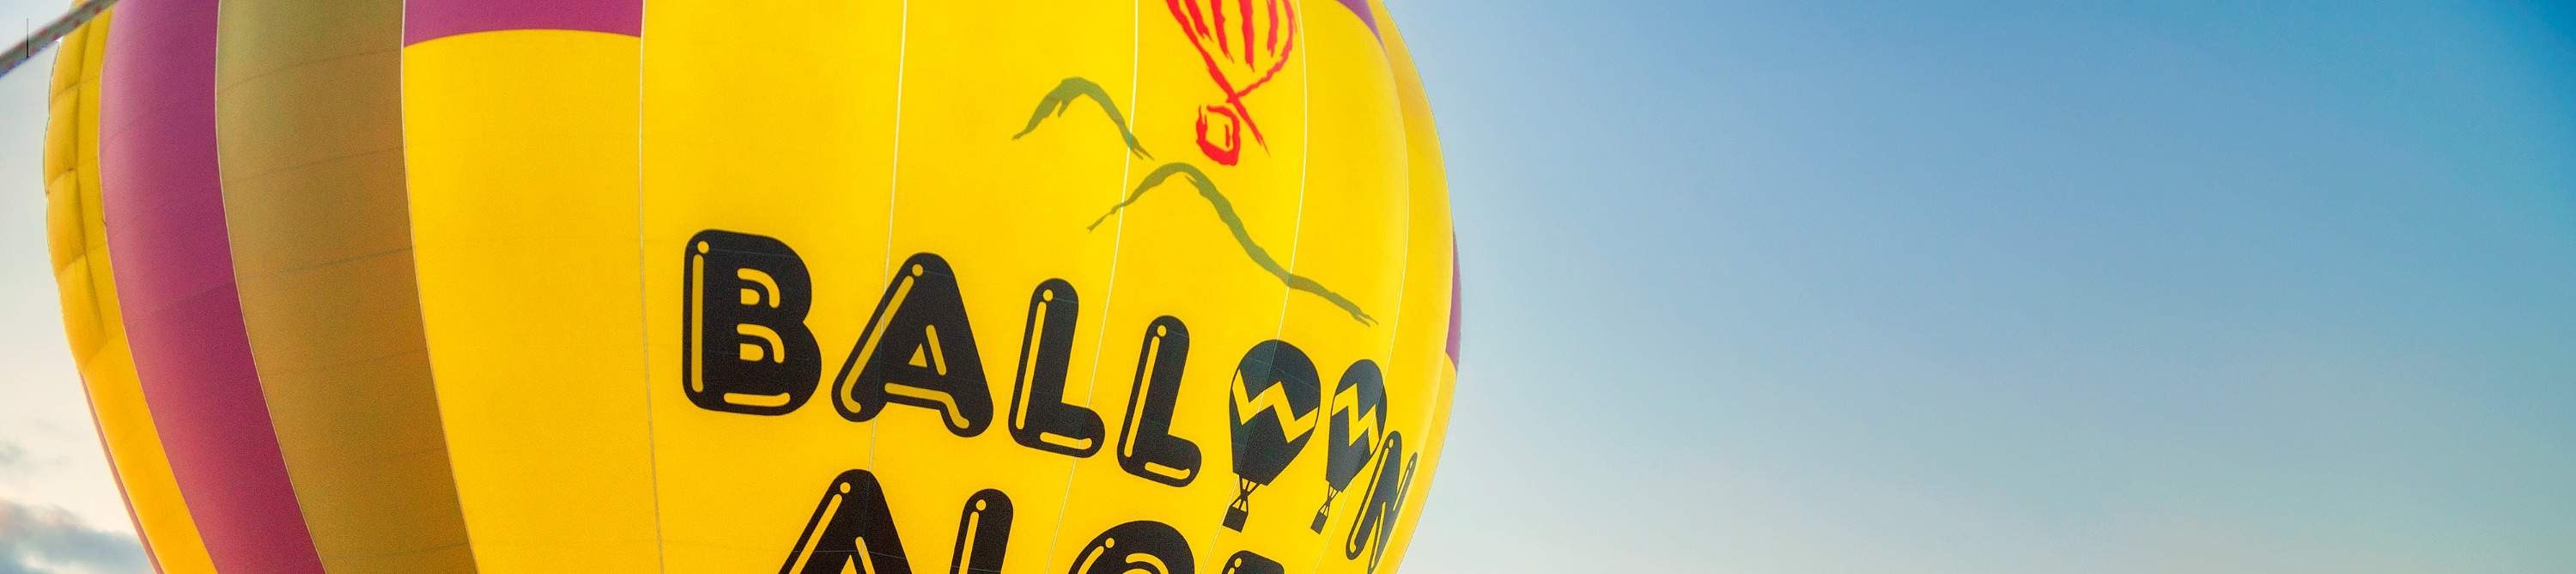 balloon aloft